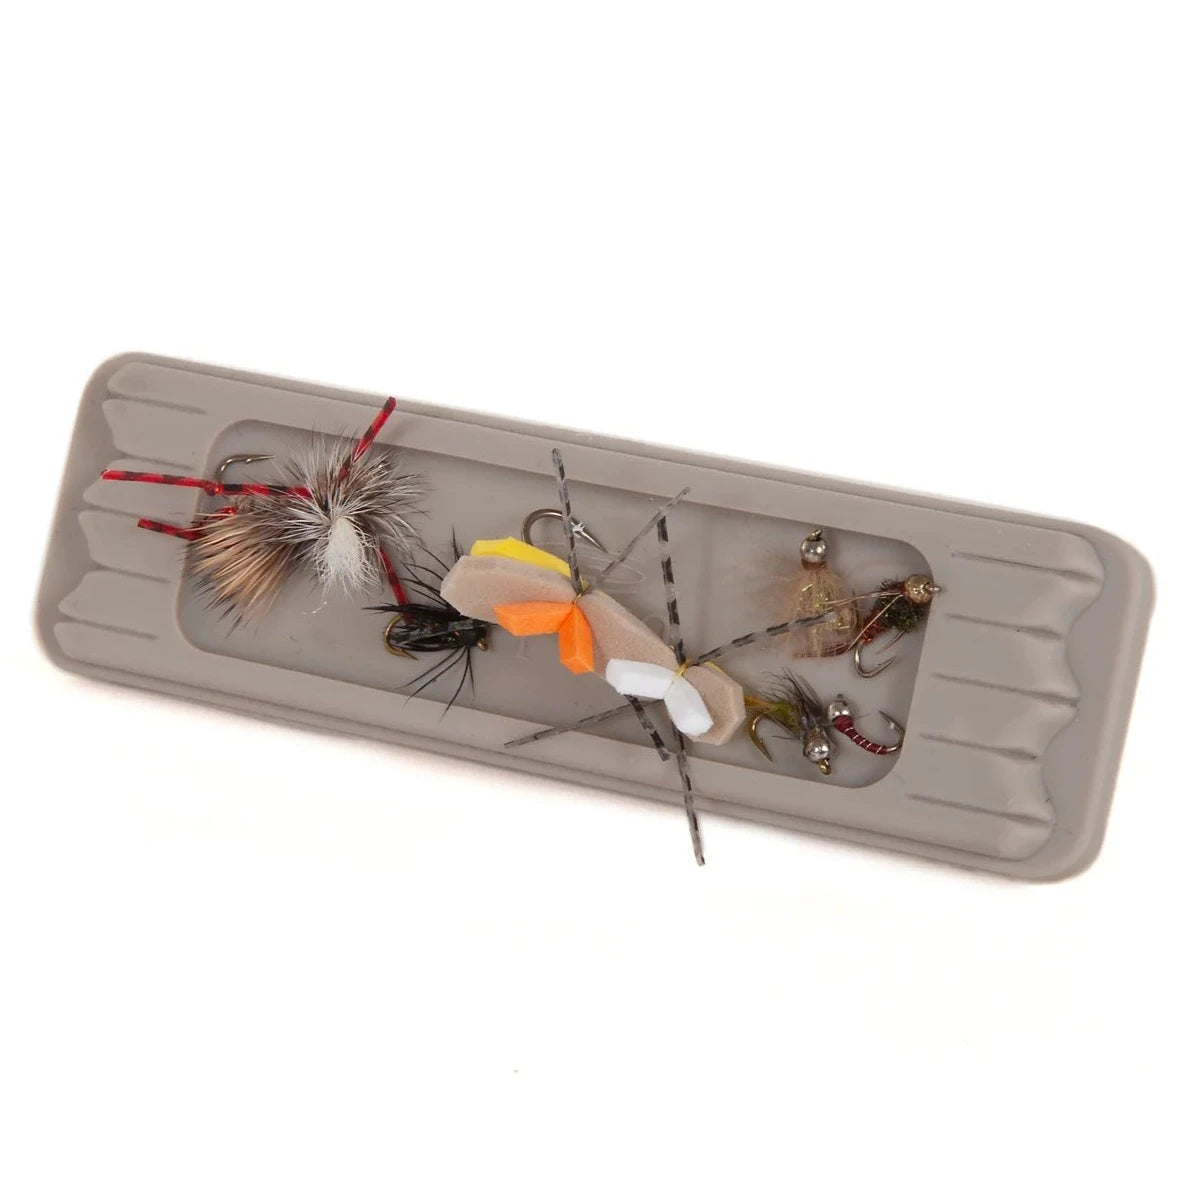 Fishpond - Tacky Fly Dock - MagPad